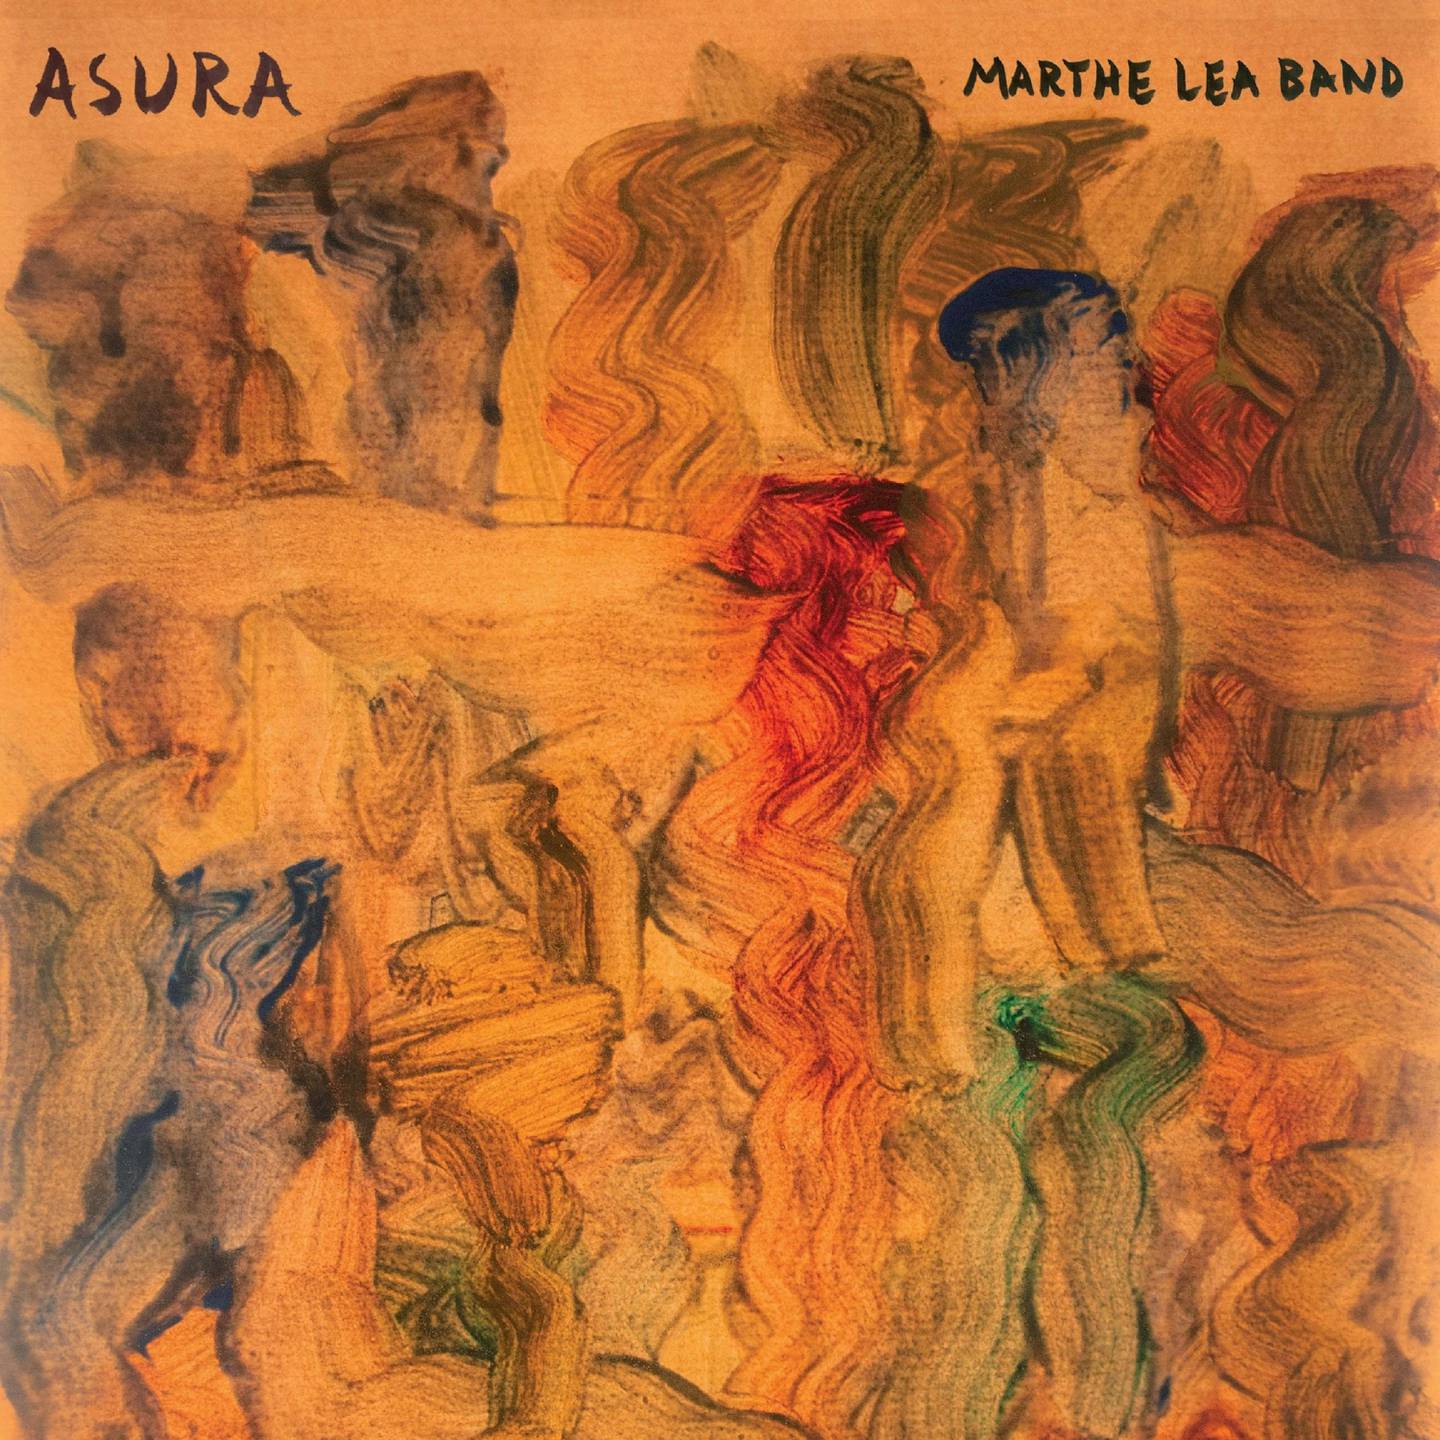 Marthe Lea Band: Asura